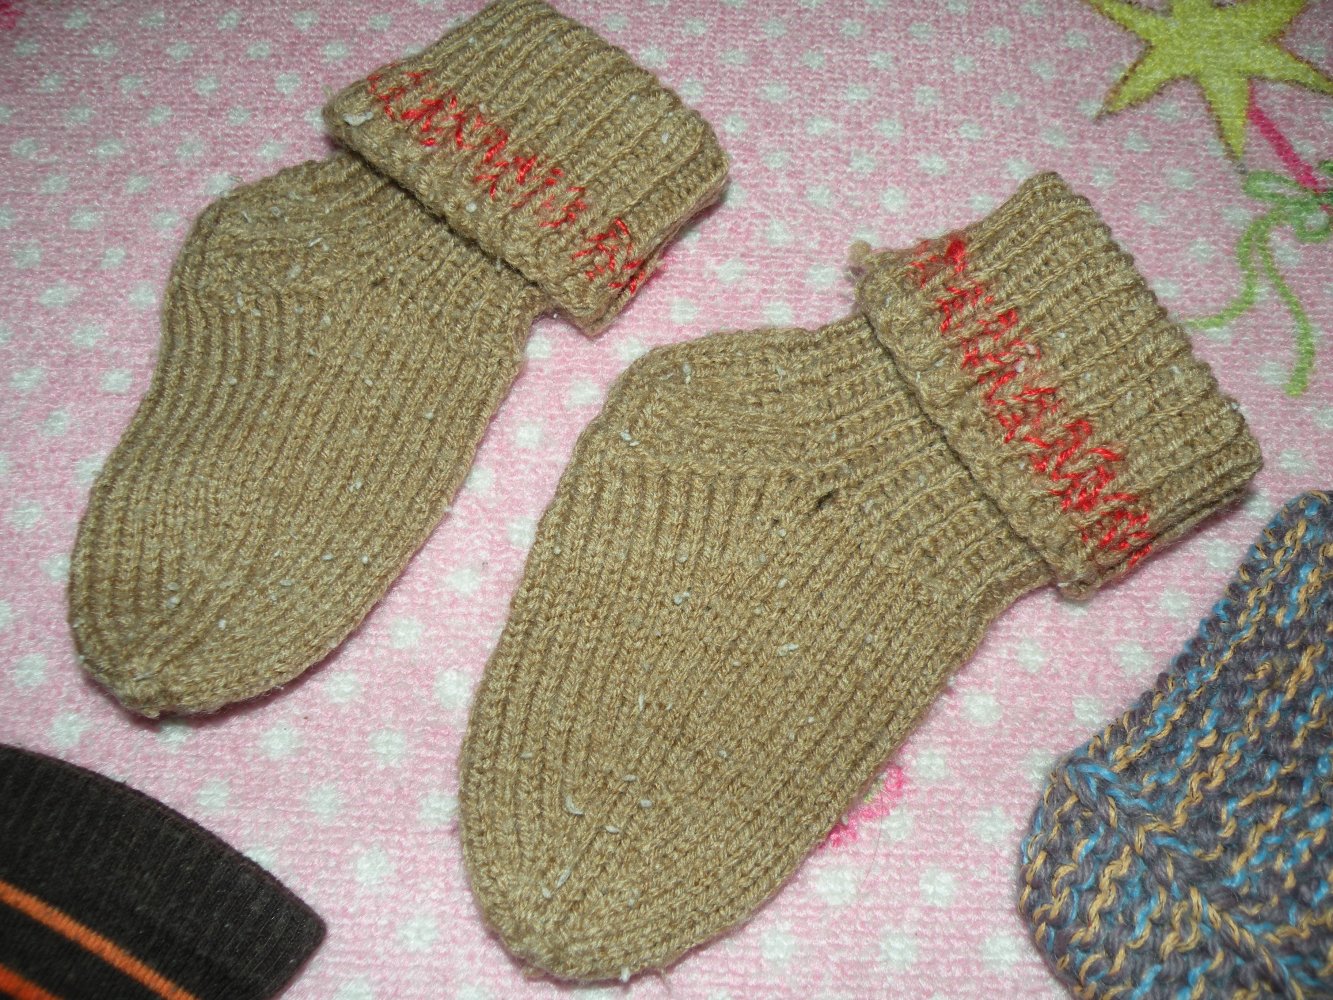 Mädchen Jungen Stricksocken Paket 6 Paar Zehensocken handmade selbst gestrickt bunt Gr. 25 - 29